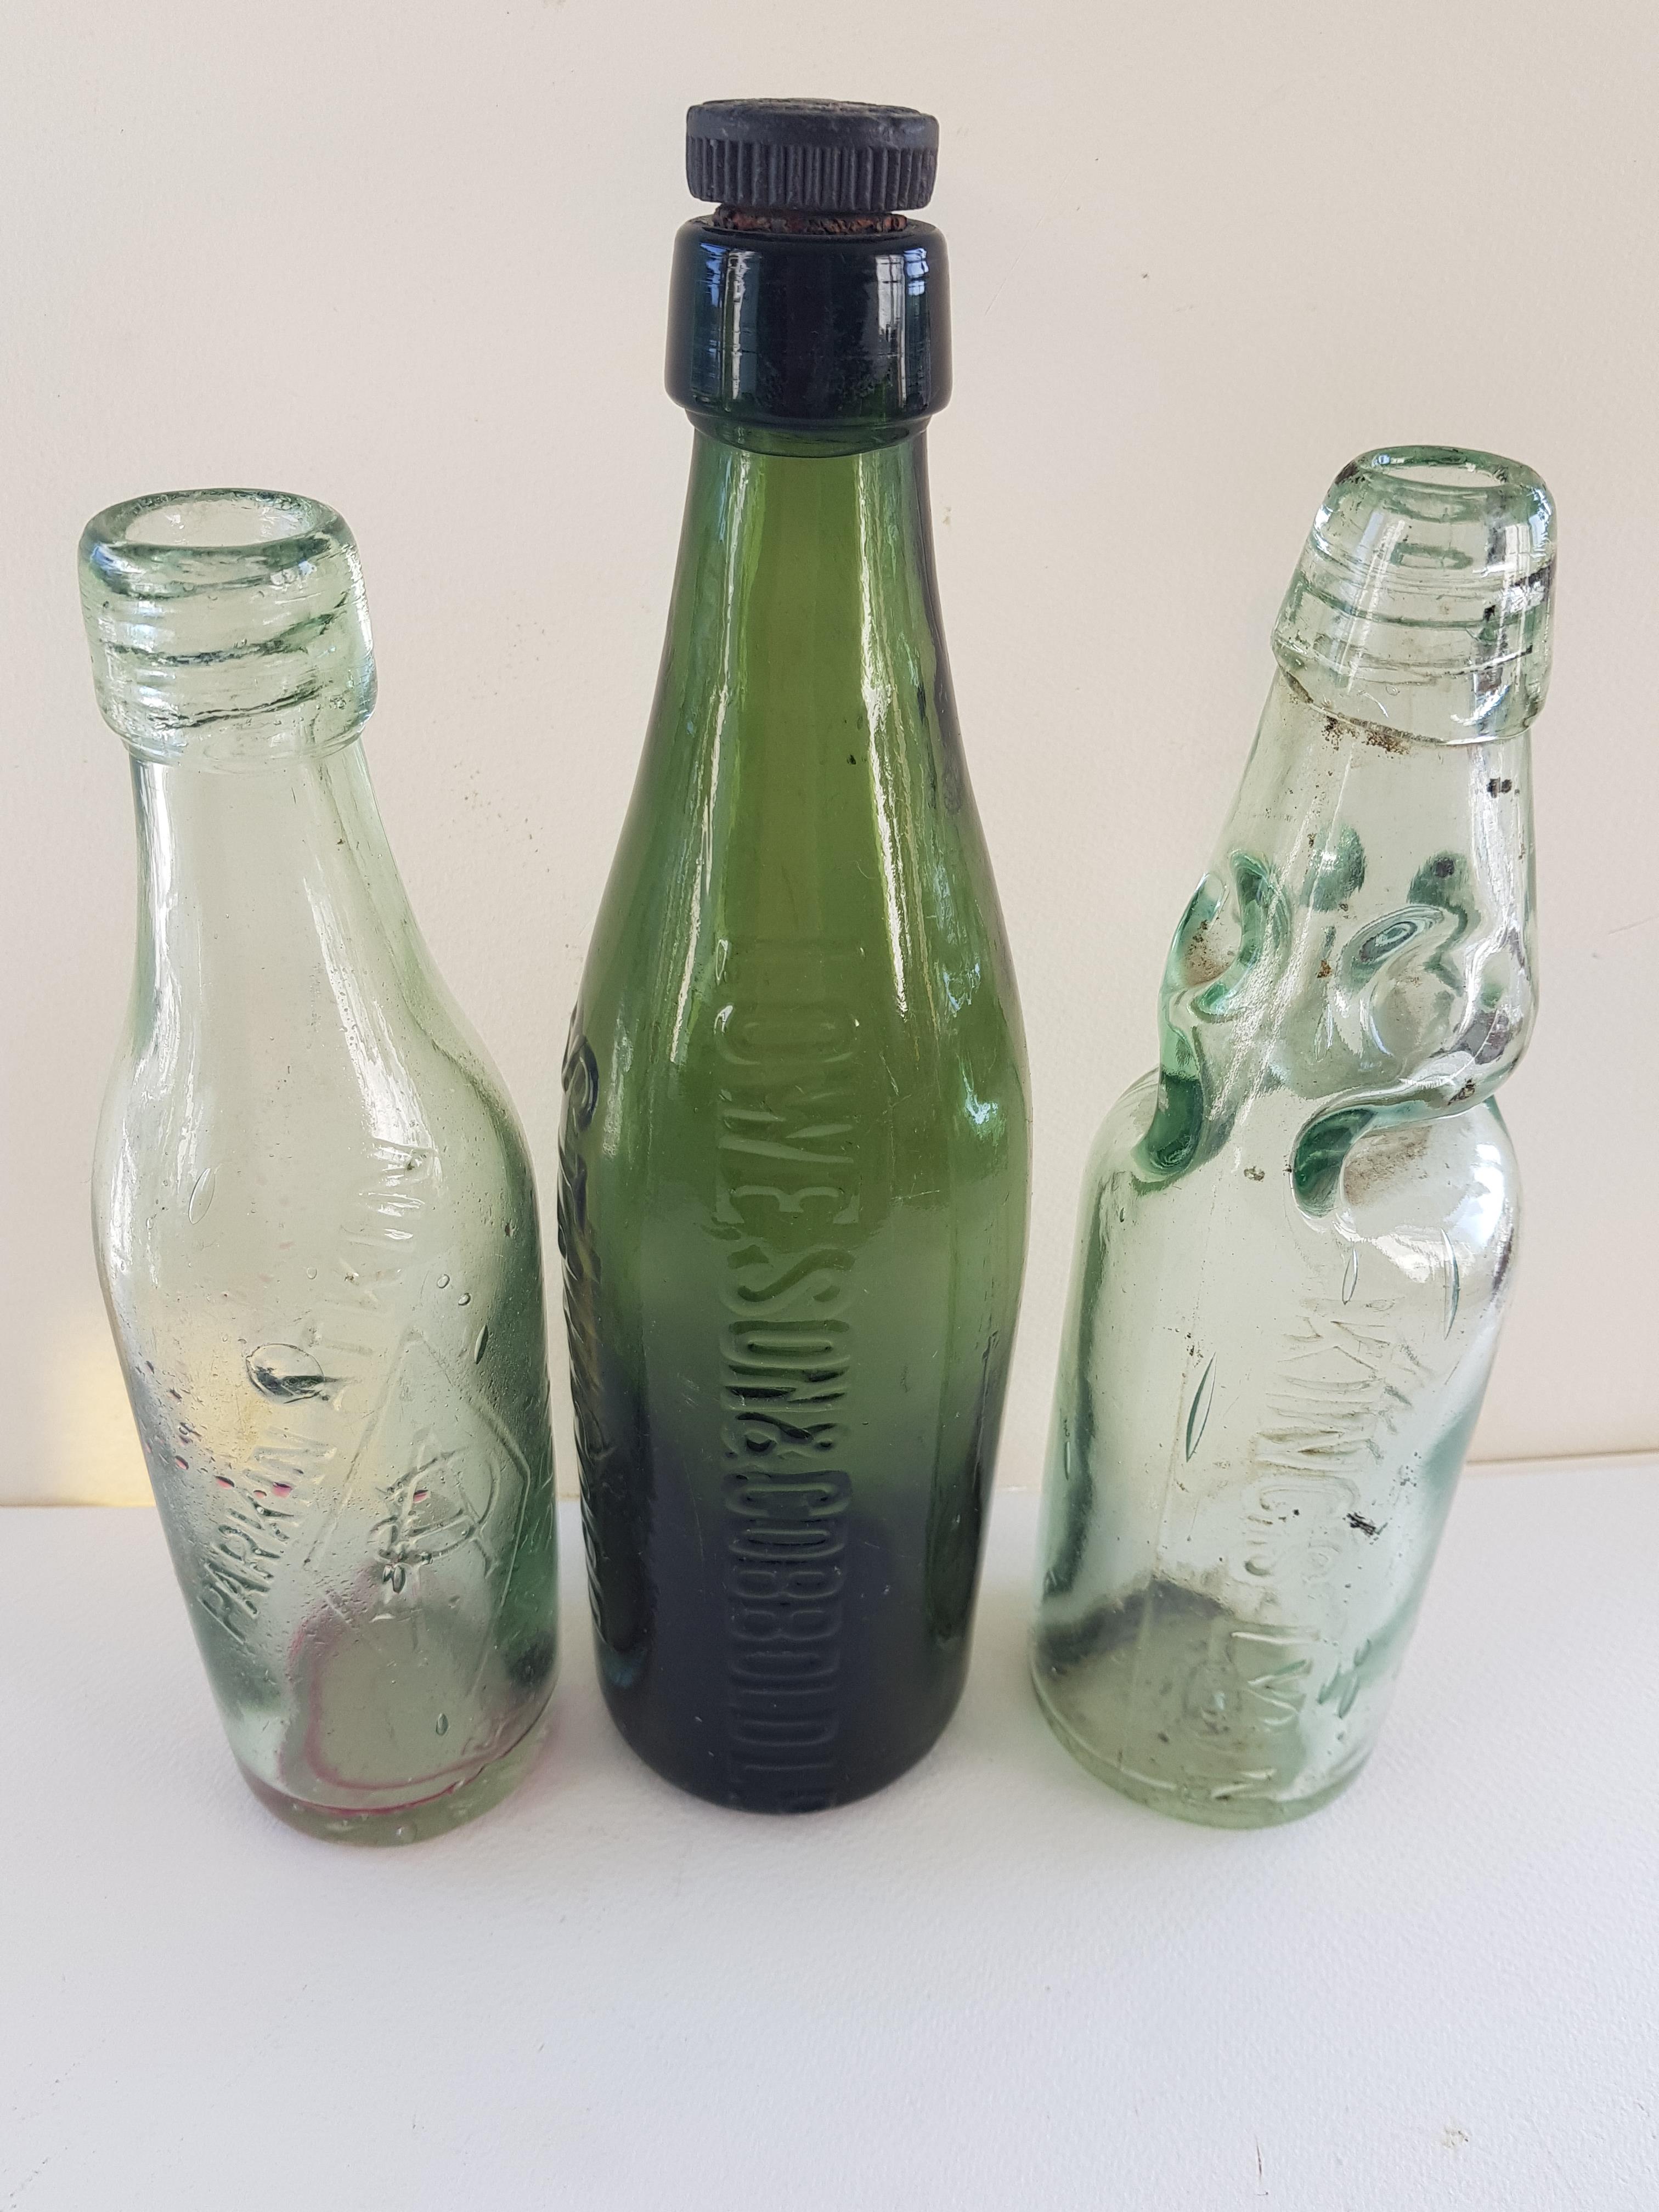 5 Vintage Green Bottles - Image 2 of 3